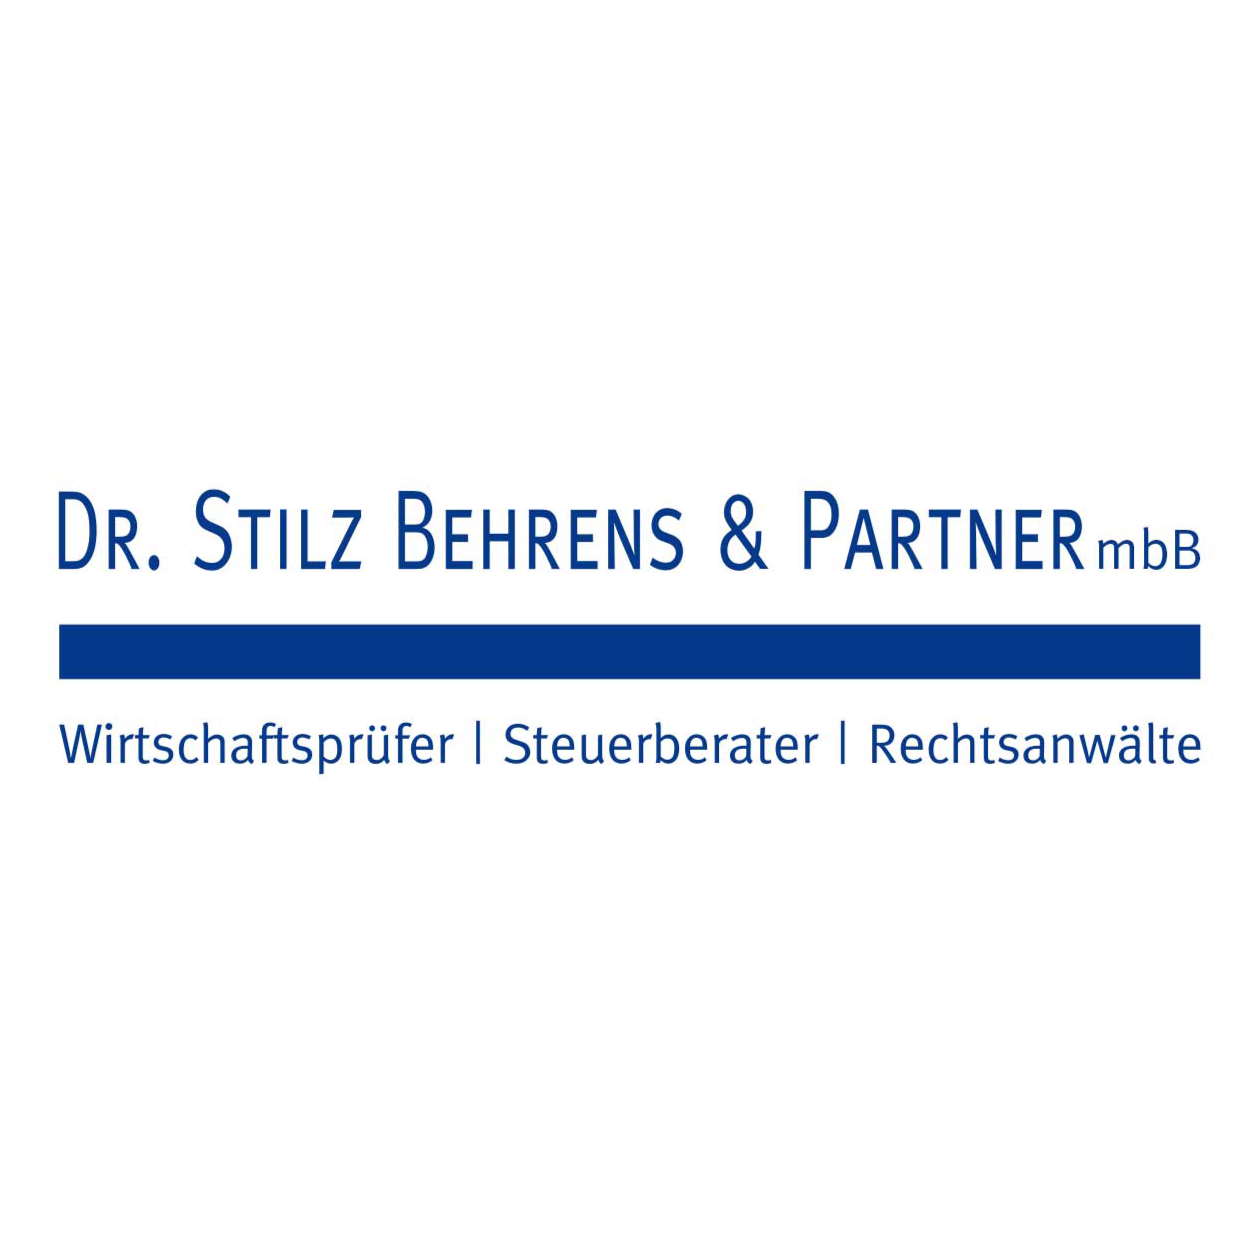 Logo Dr. Stilz Behrens & Partner mbB, Wirtschaftsprüfer, Steuerberater, Rechtsanwälte